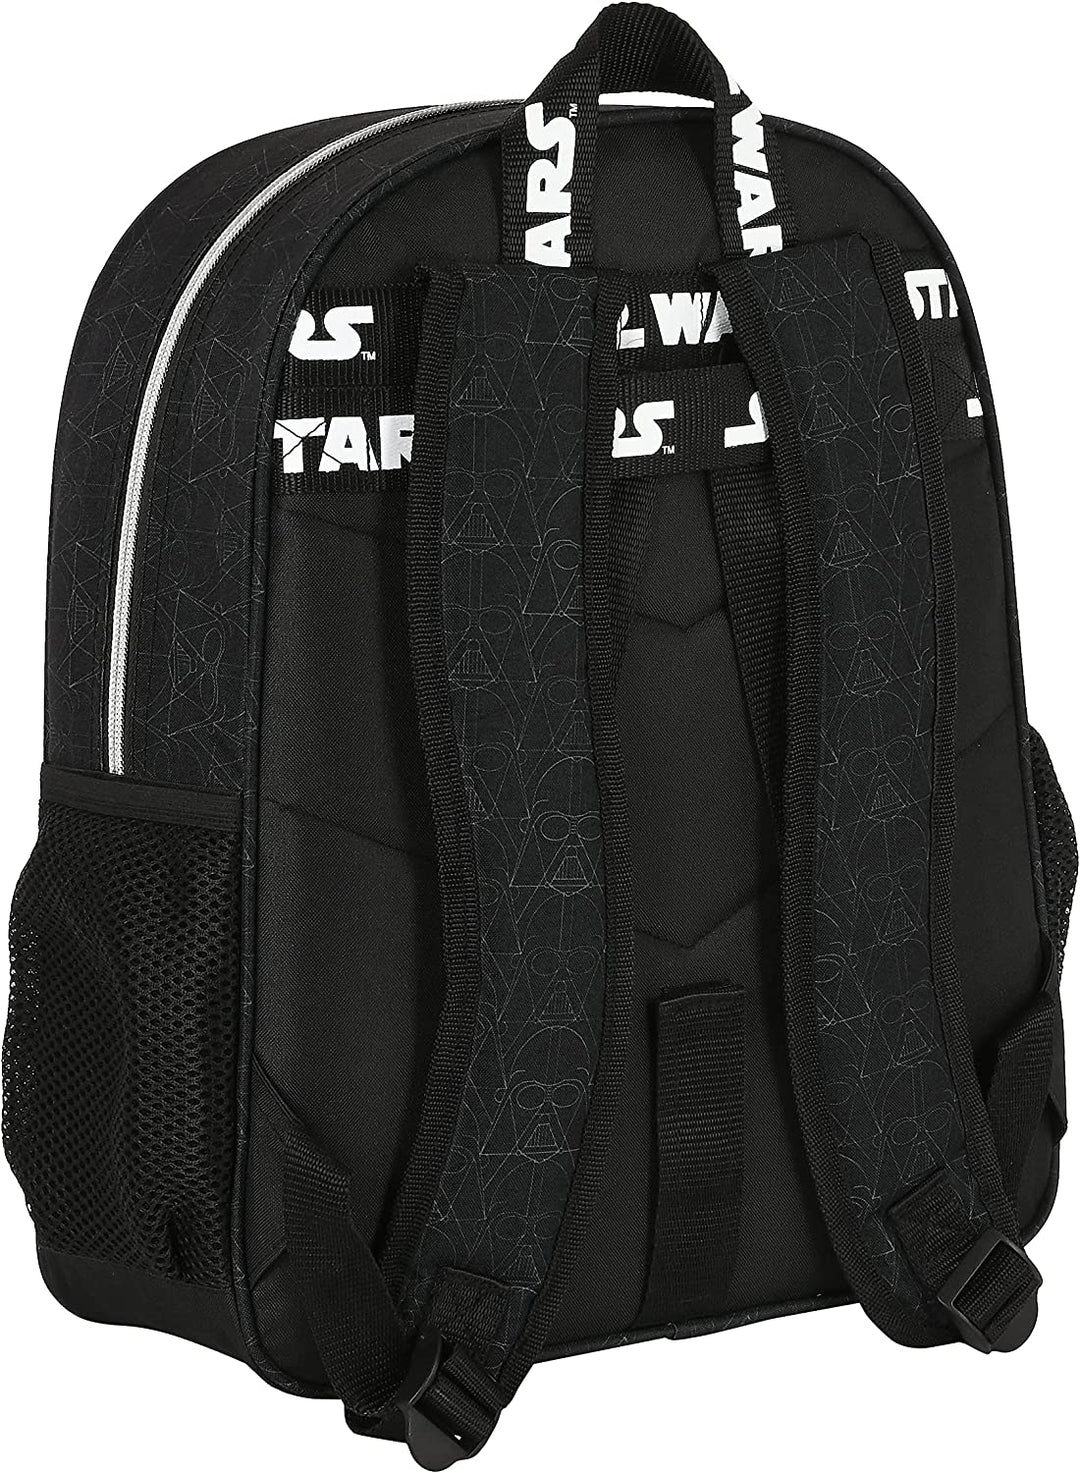 SAFTA 612201640 Junior Backpack 38 Cm Star Wars "Fighter"